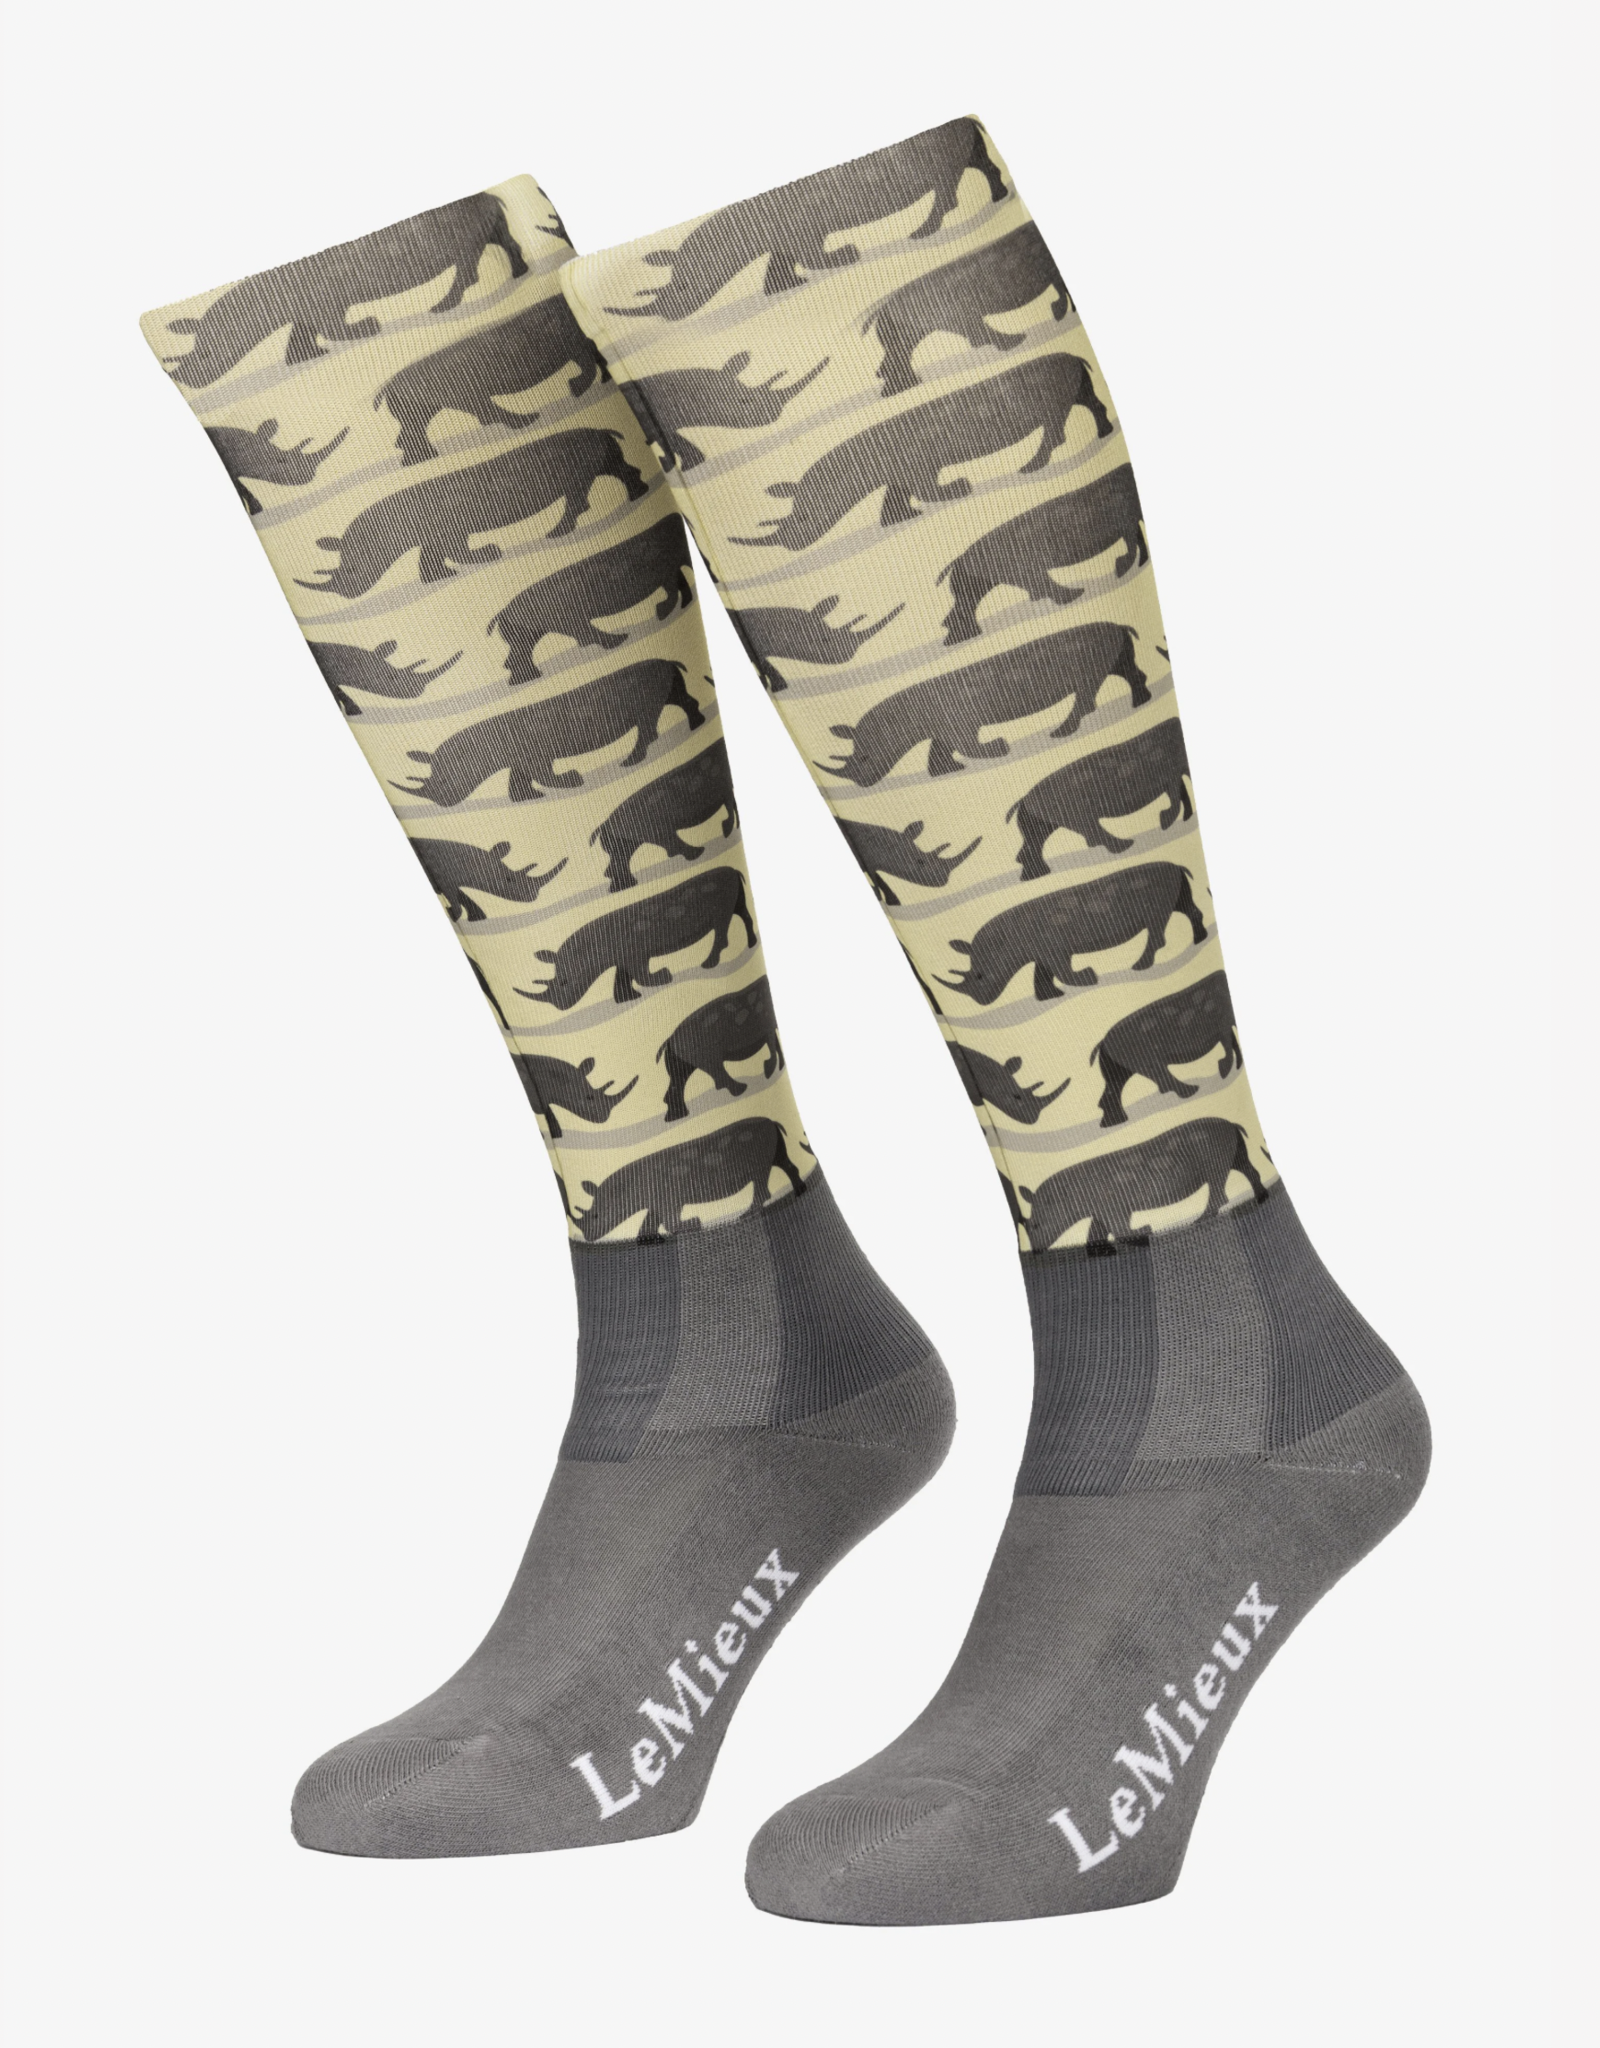 Lemieux LeMieux Footsie Socks